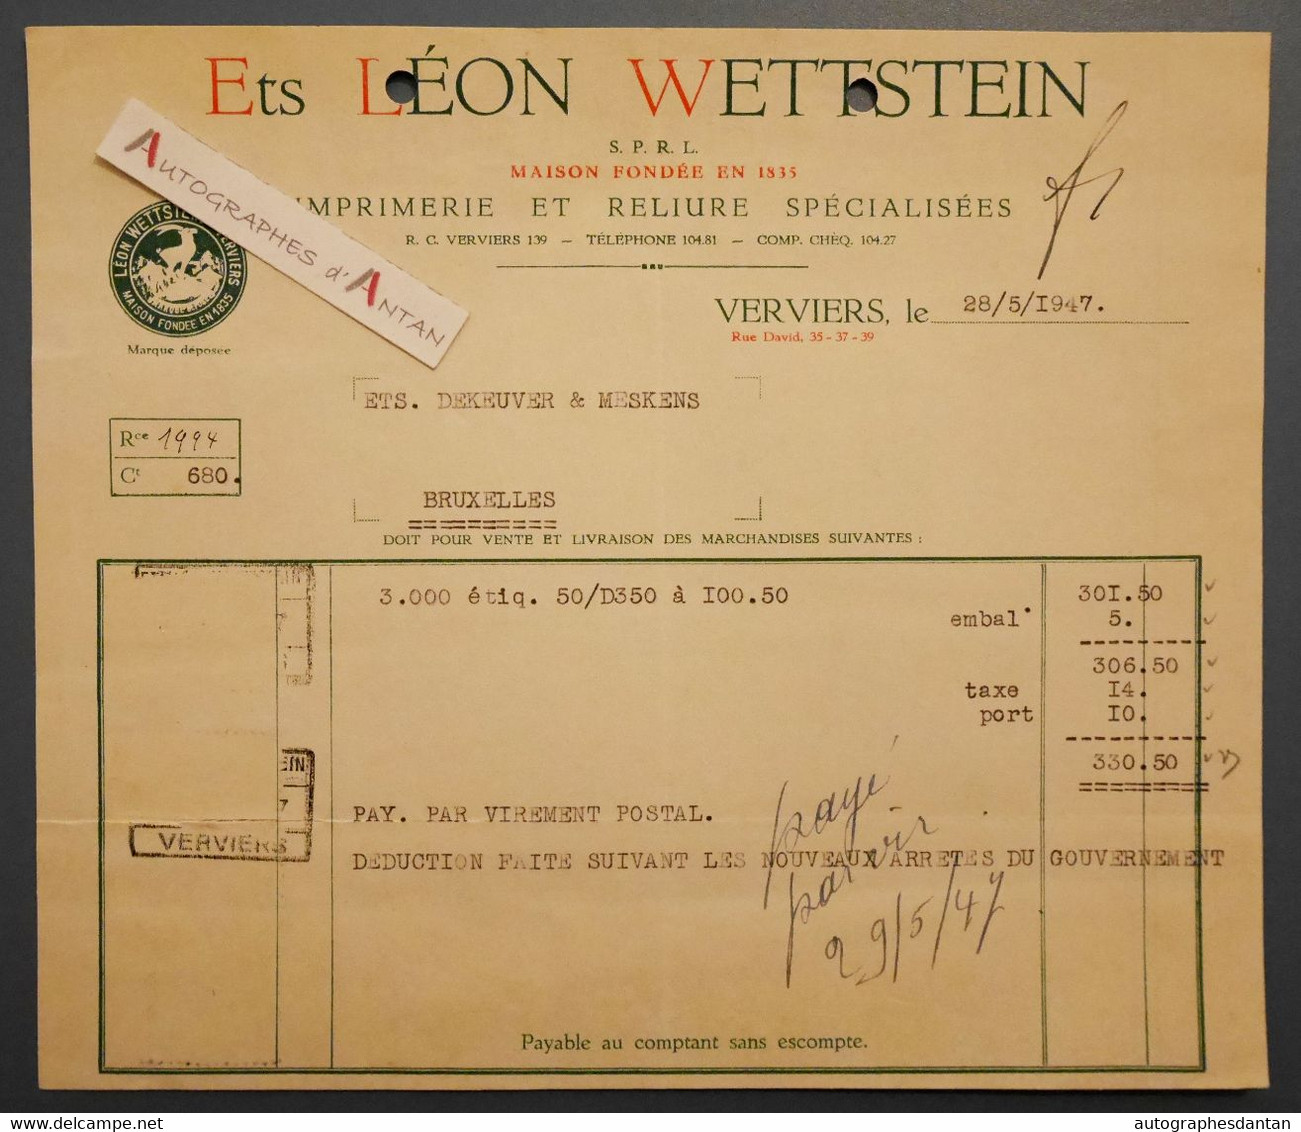 Léon WETTSTEIN Imprimerie & Reliure - VERVIERS - Facture 1947 > Ets Dekeuver Et Meskens - Belgique - Printing & Stationeries